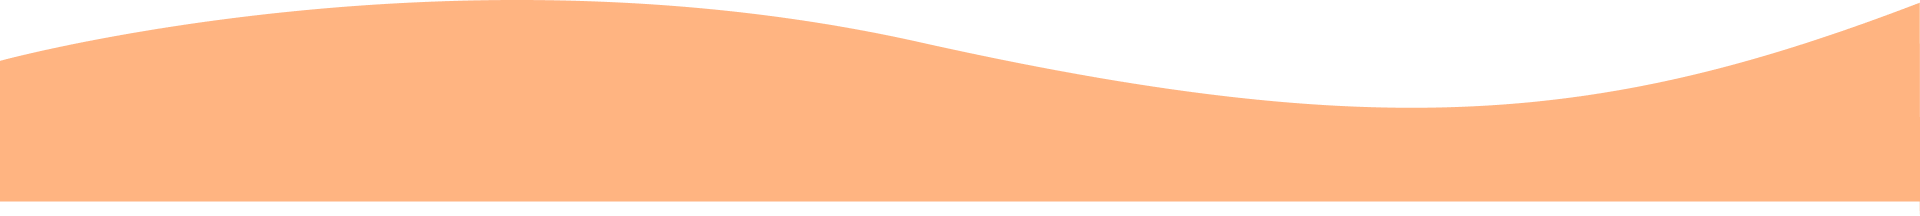 bottom curve shape